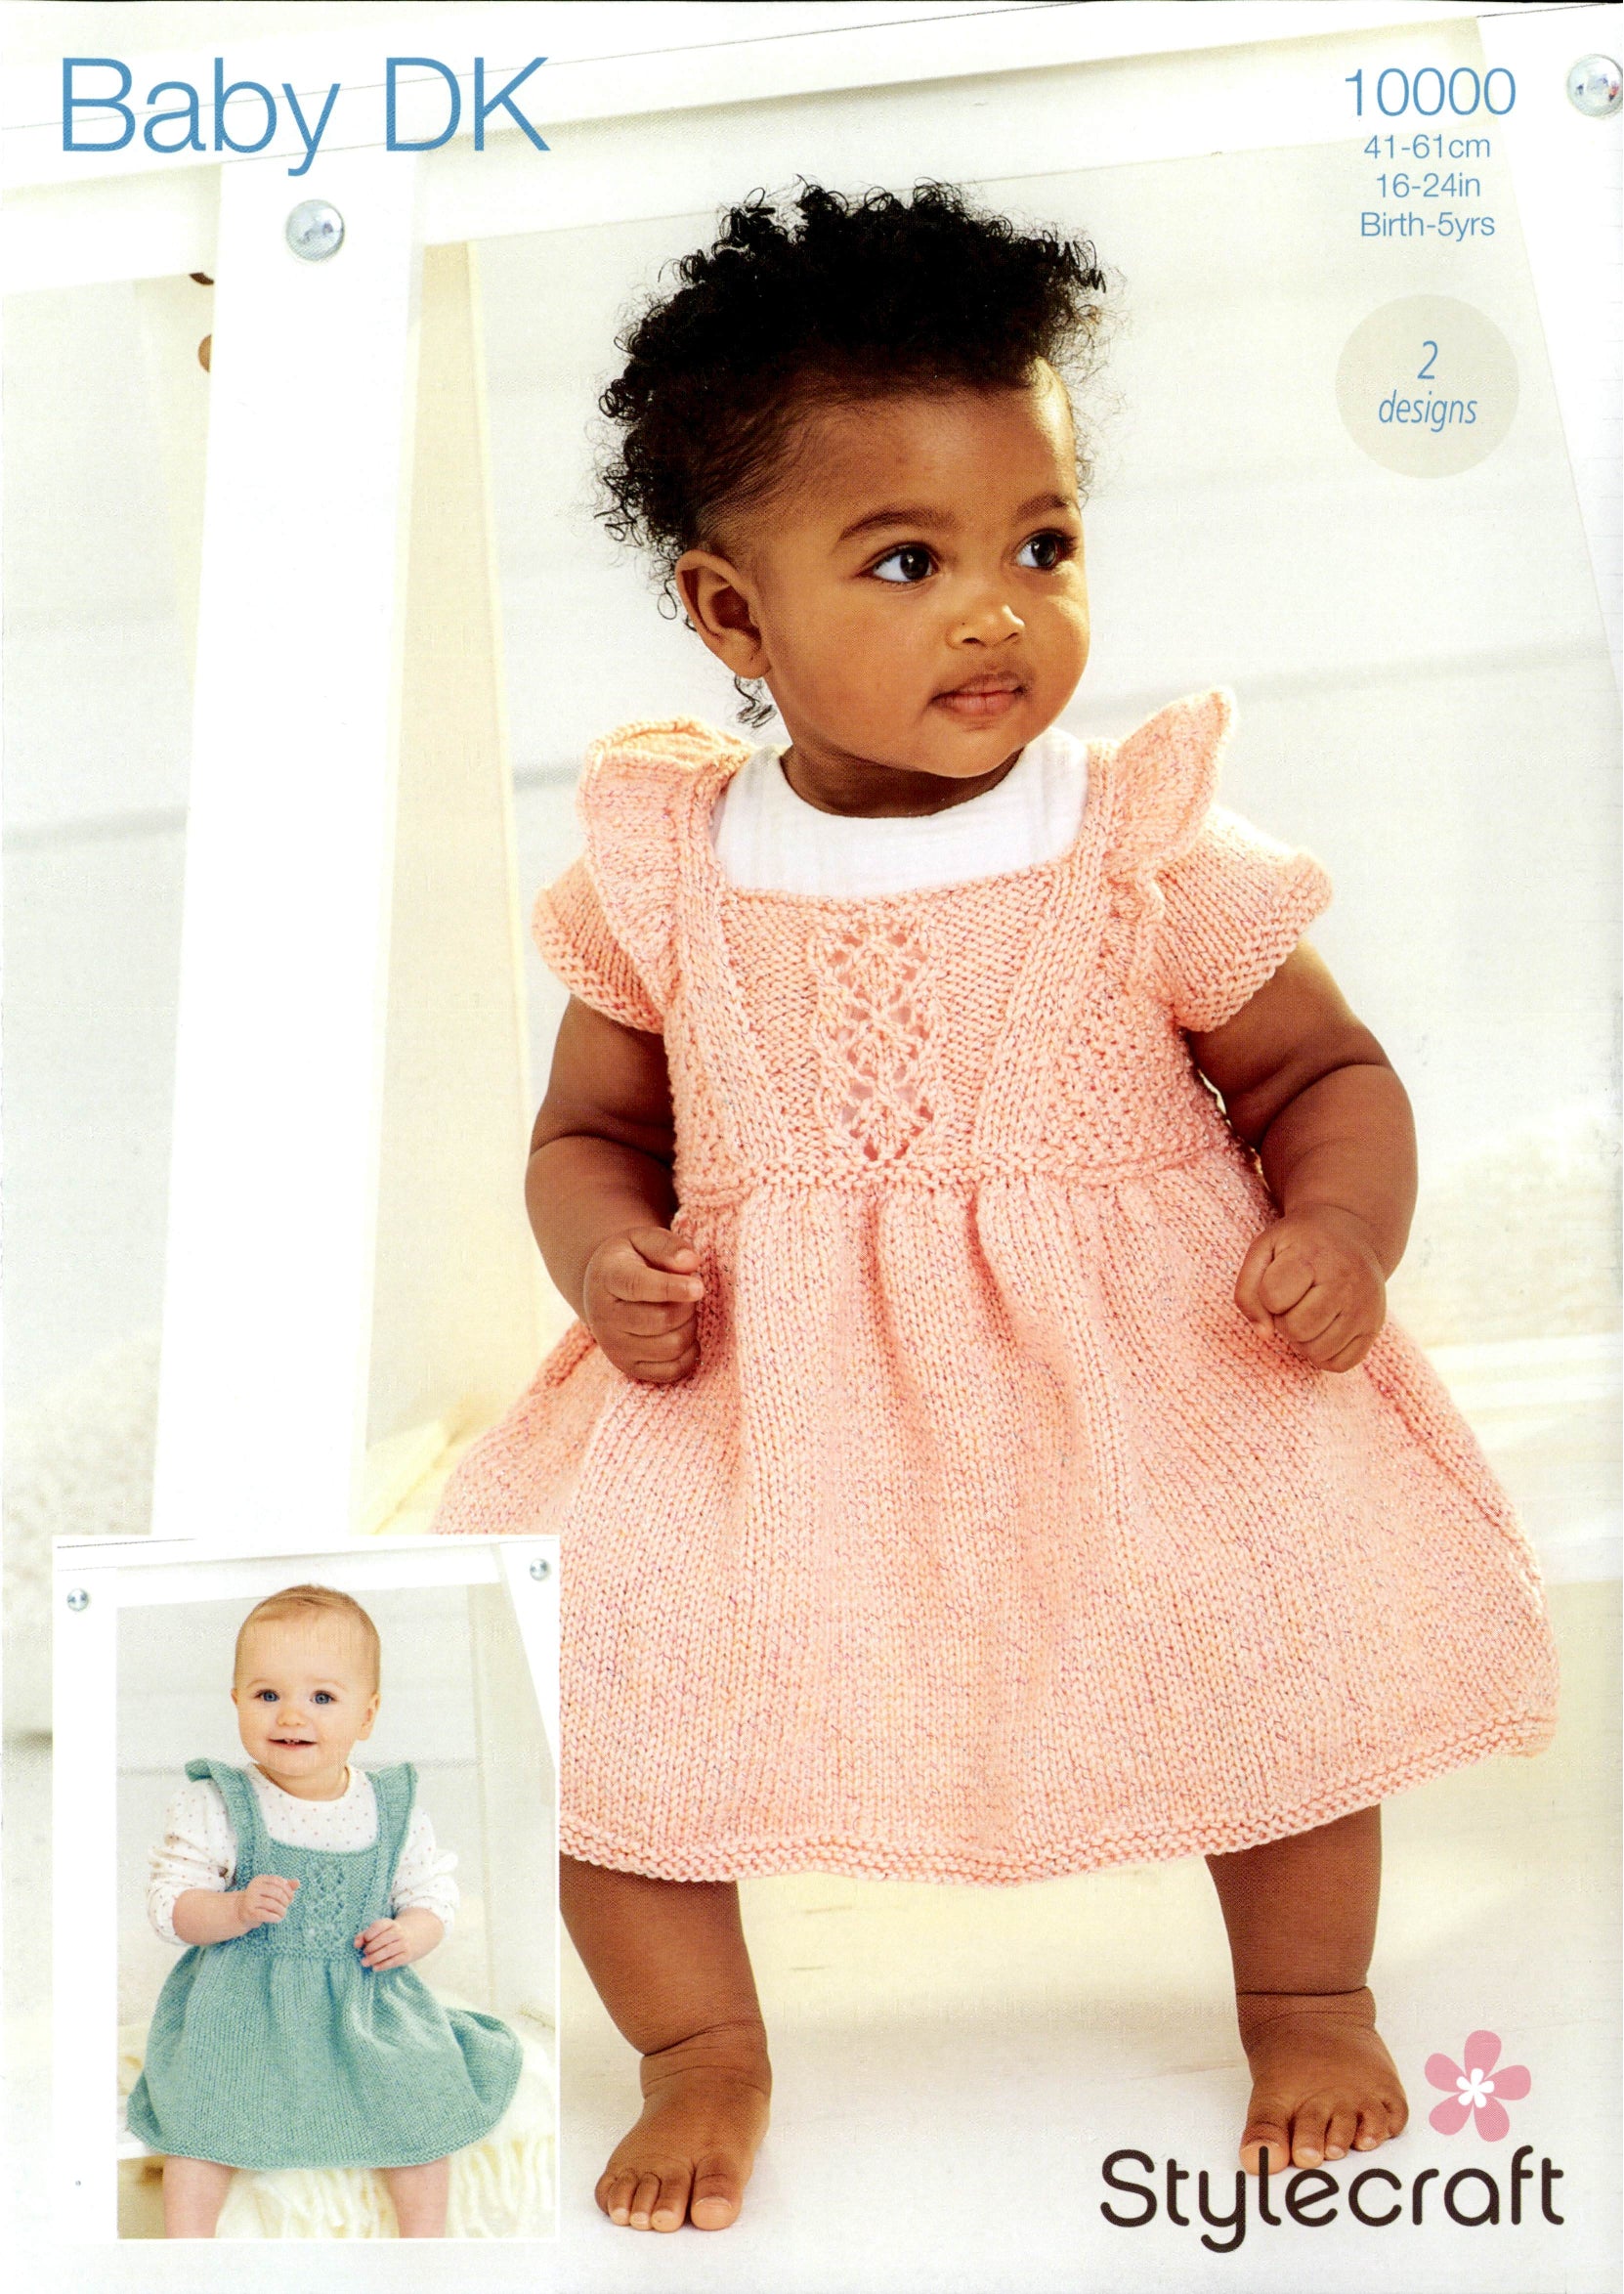 Stylecraft Baby Sparkle DK - Dresses (10000)